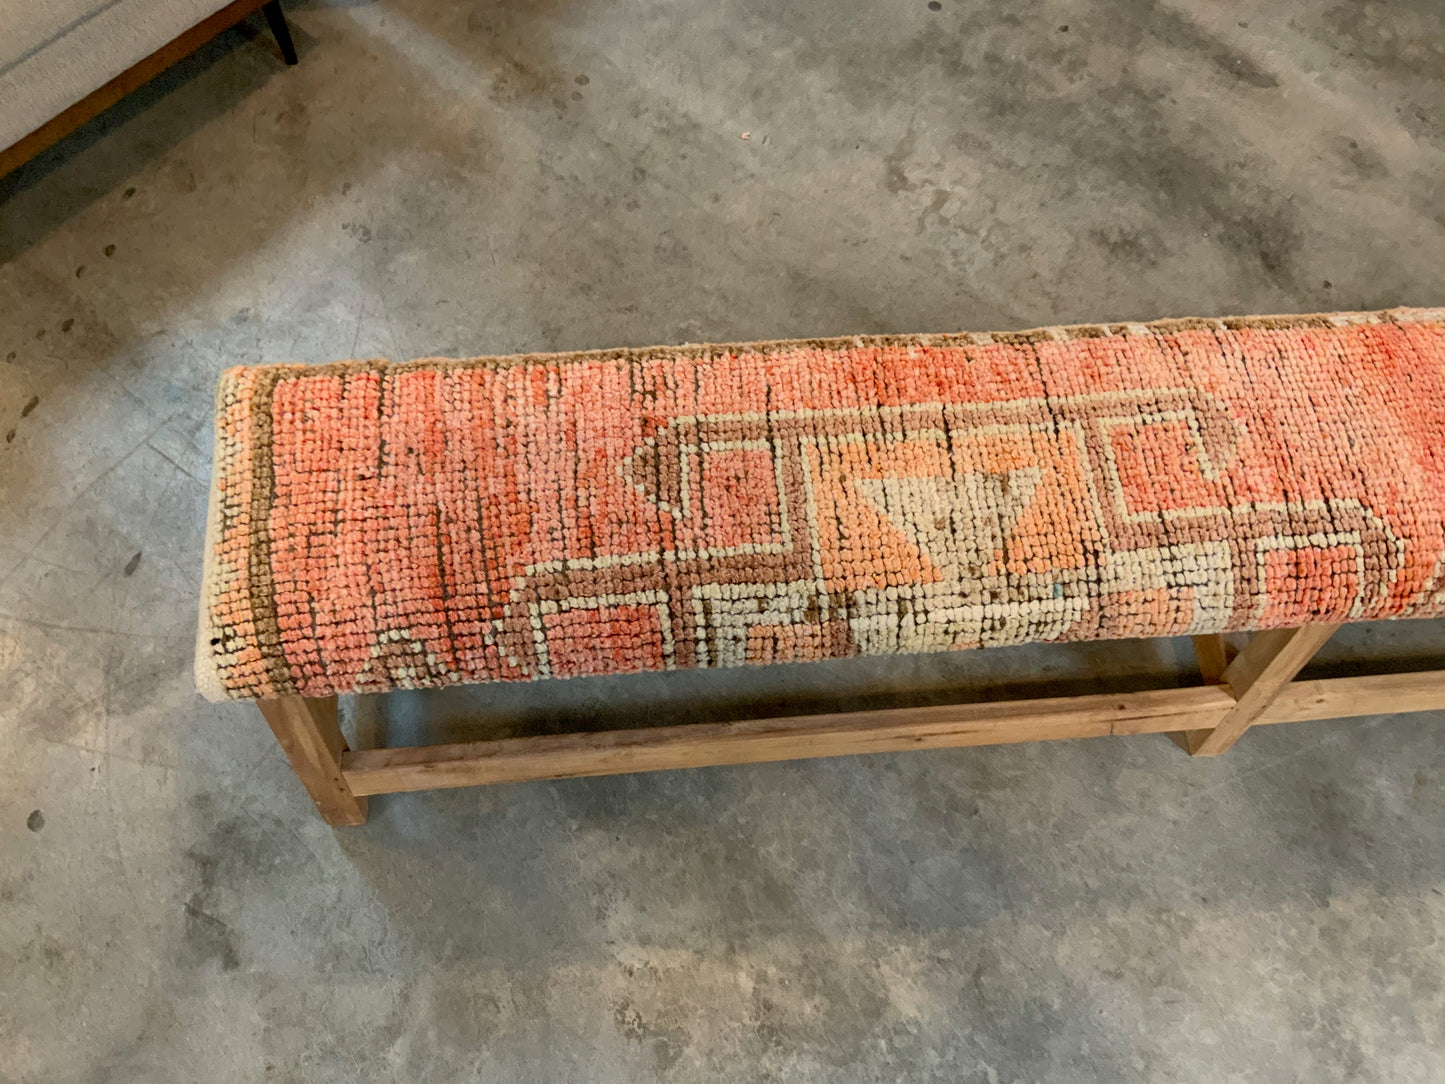 LG - Vintage Rug Upholstered Bleached Wood Bench